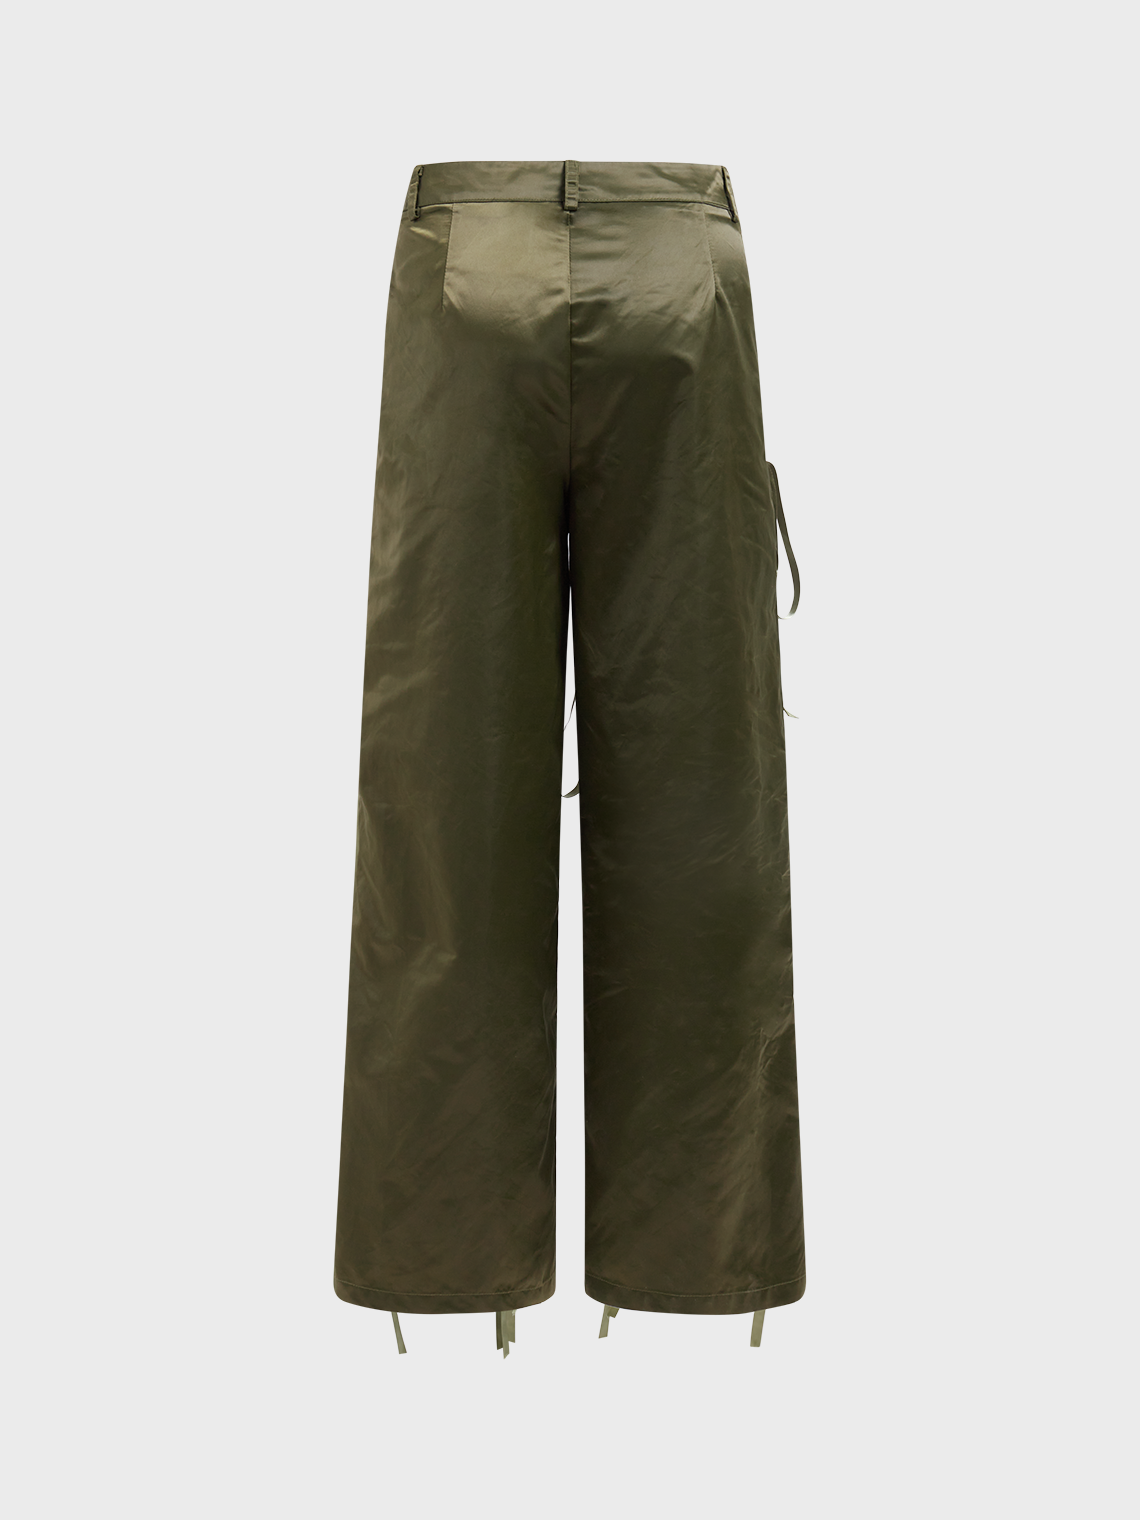 【Final Sale】Pockets Lace Up Plain Pants